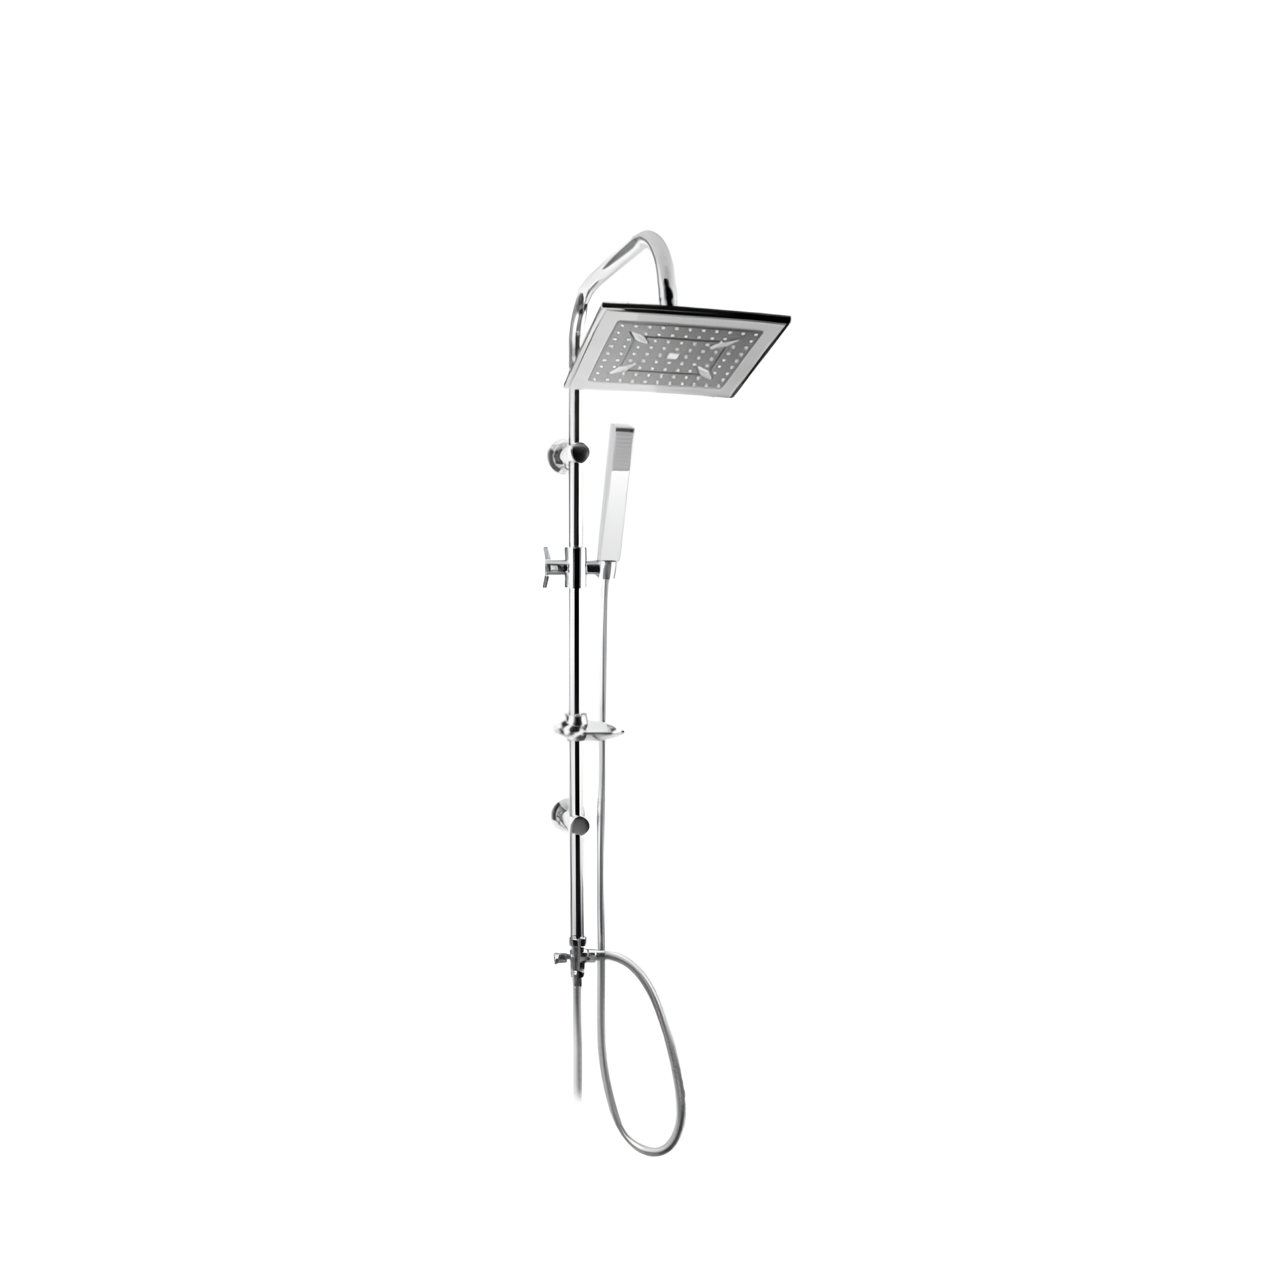 L711C Square Shower Faucet Shower Room Hardware Fitting Modern Furniture Shower Set